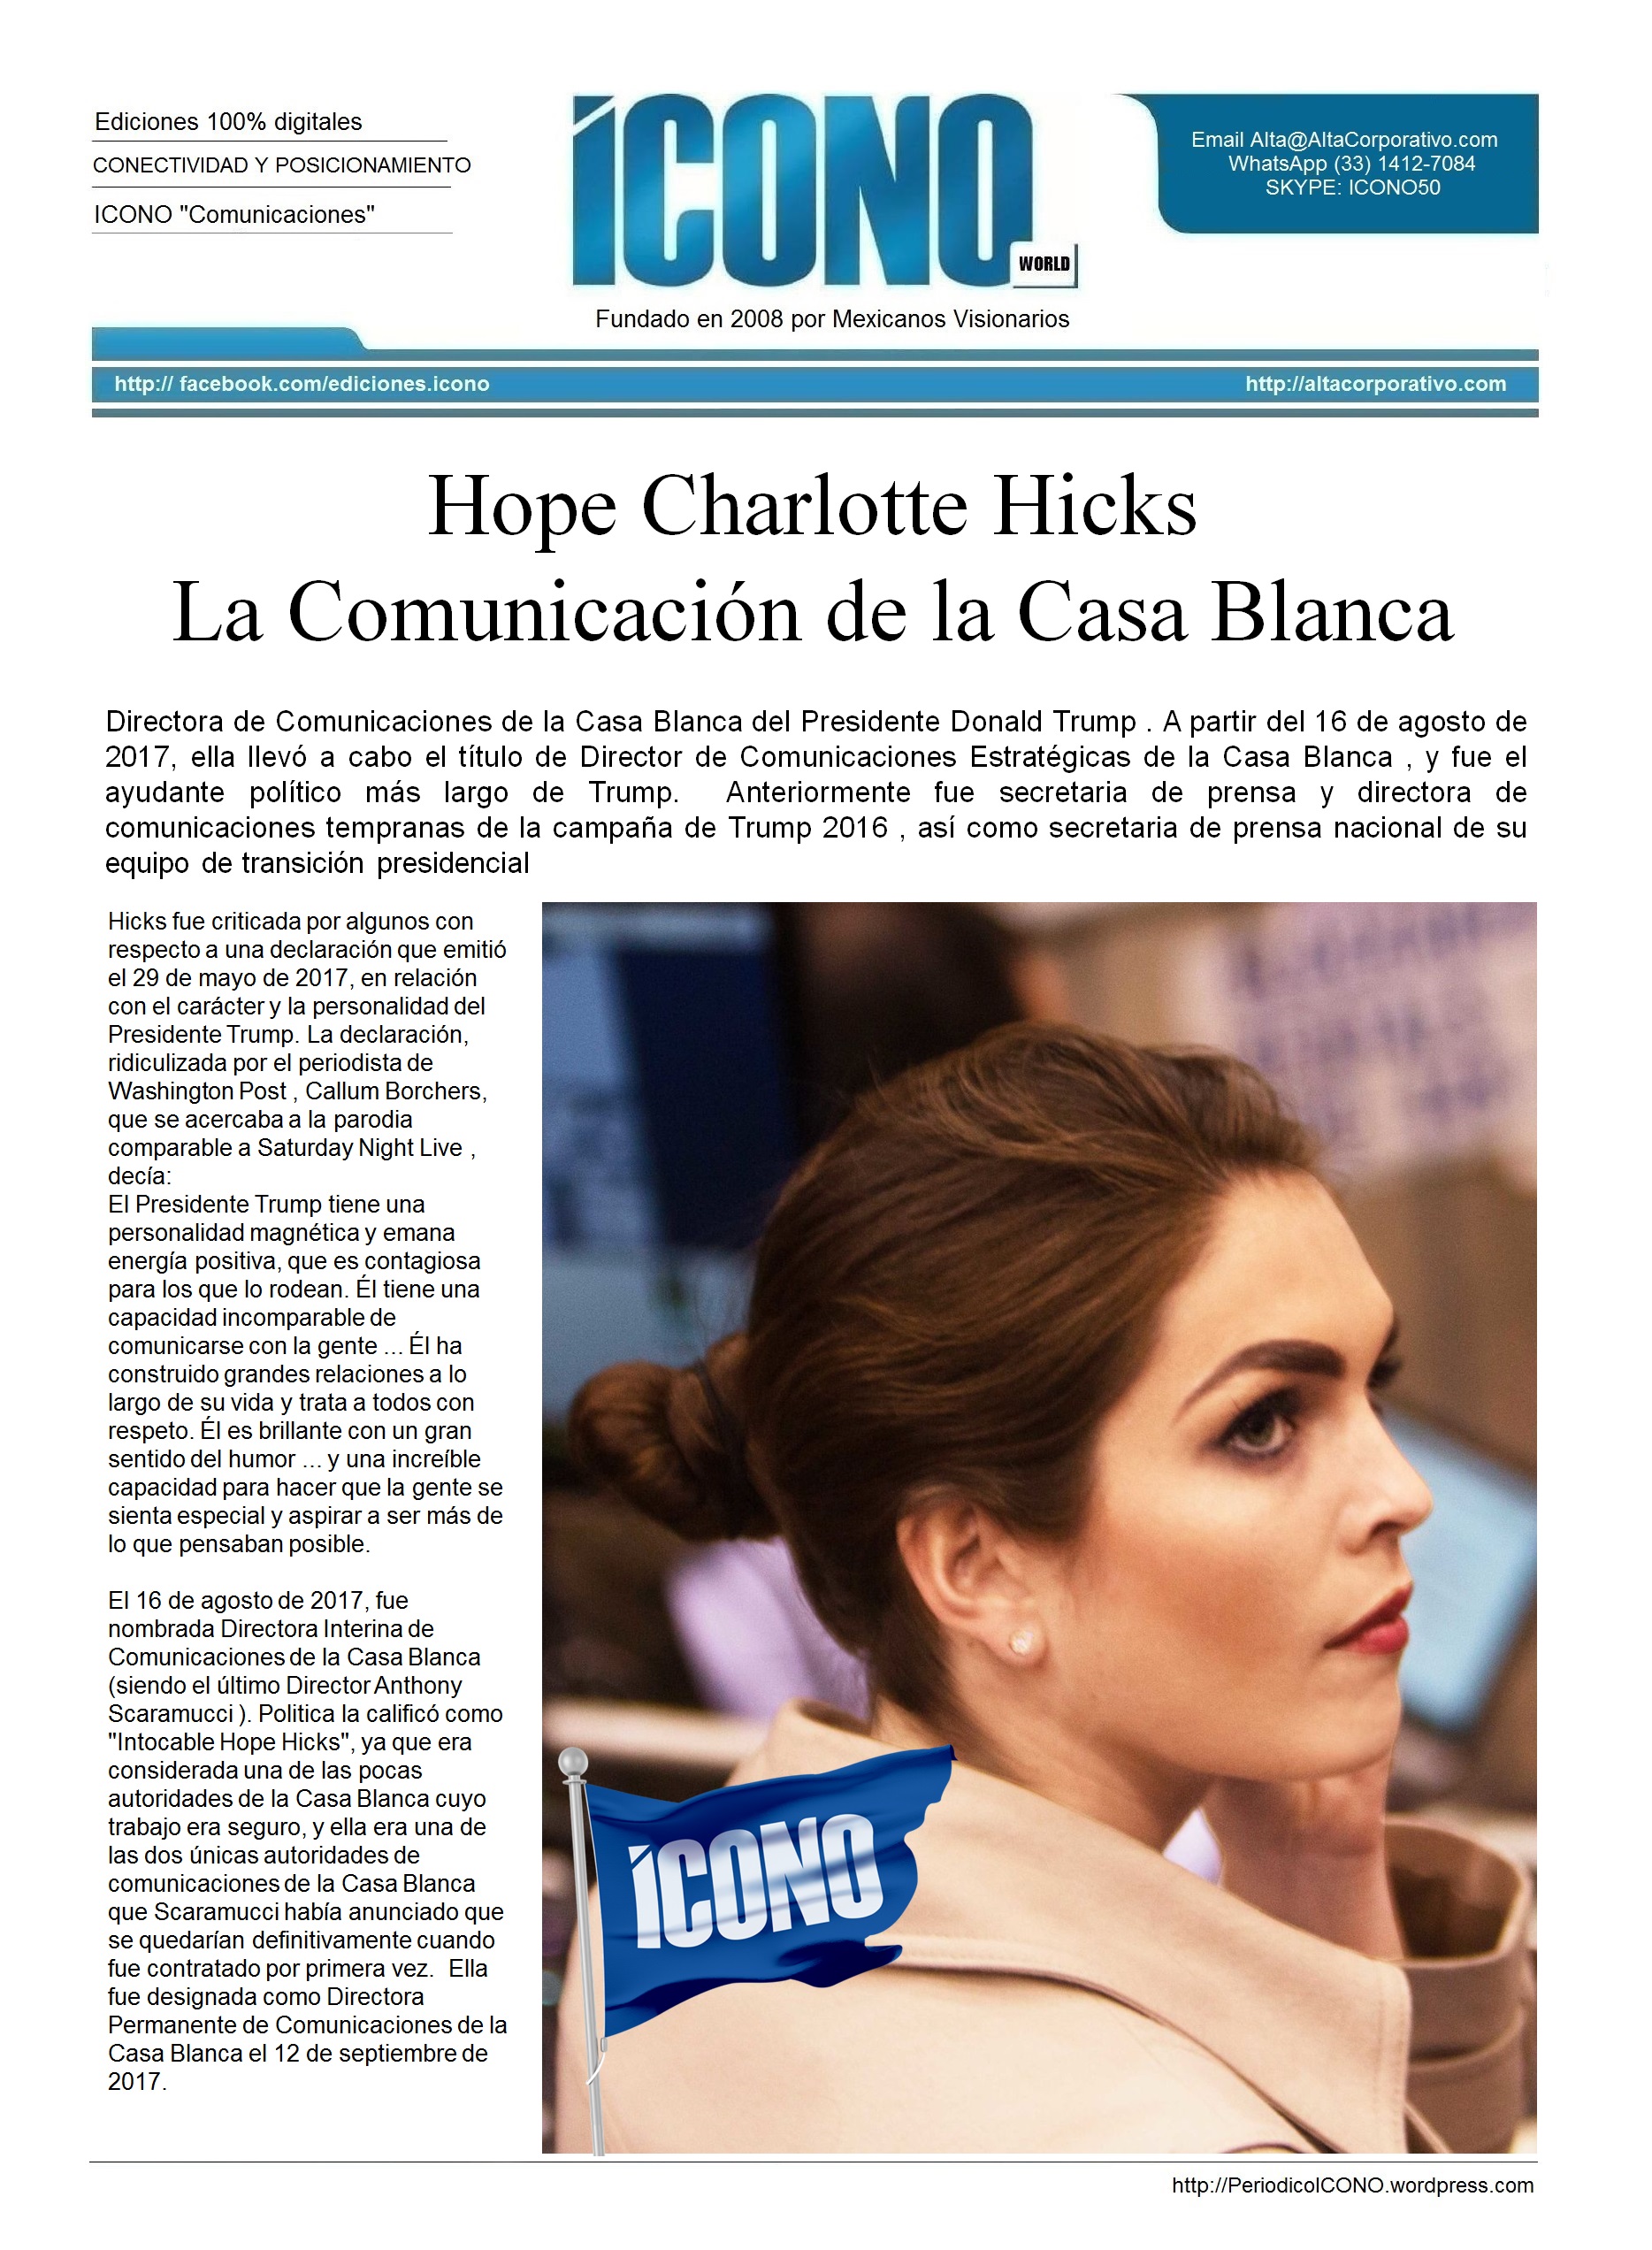 Hope Charlotte Hicks La Comunicación de la Casa Blanca | ICONO 20171868 x 2544